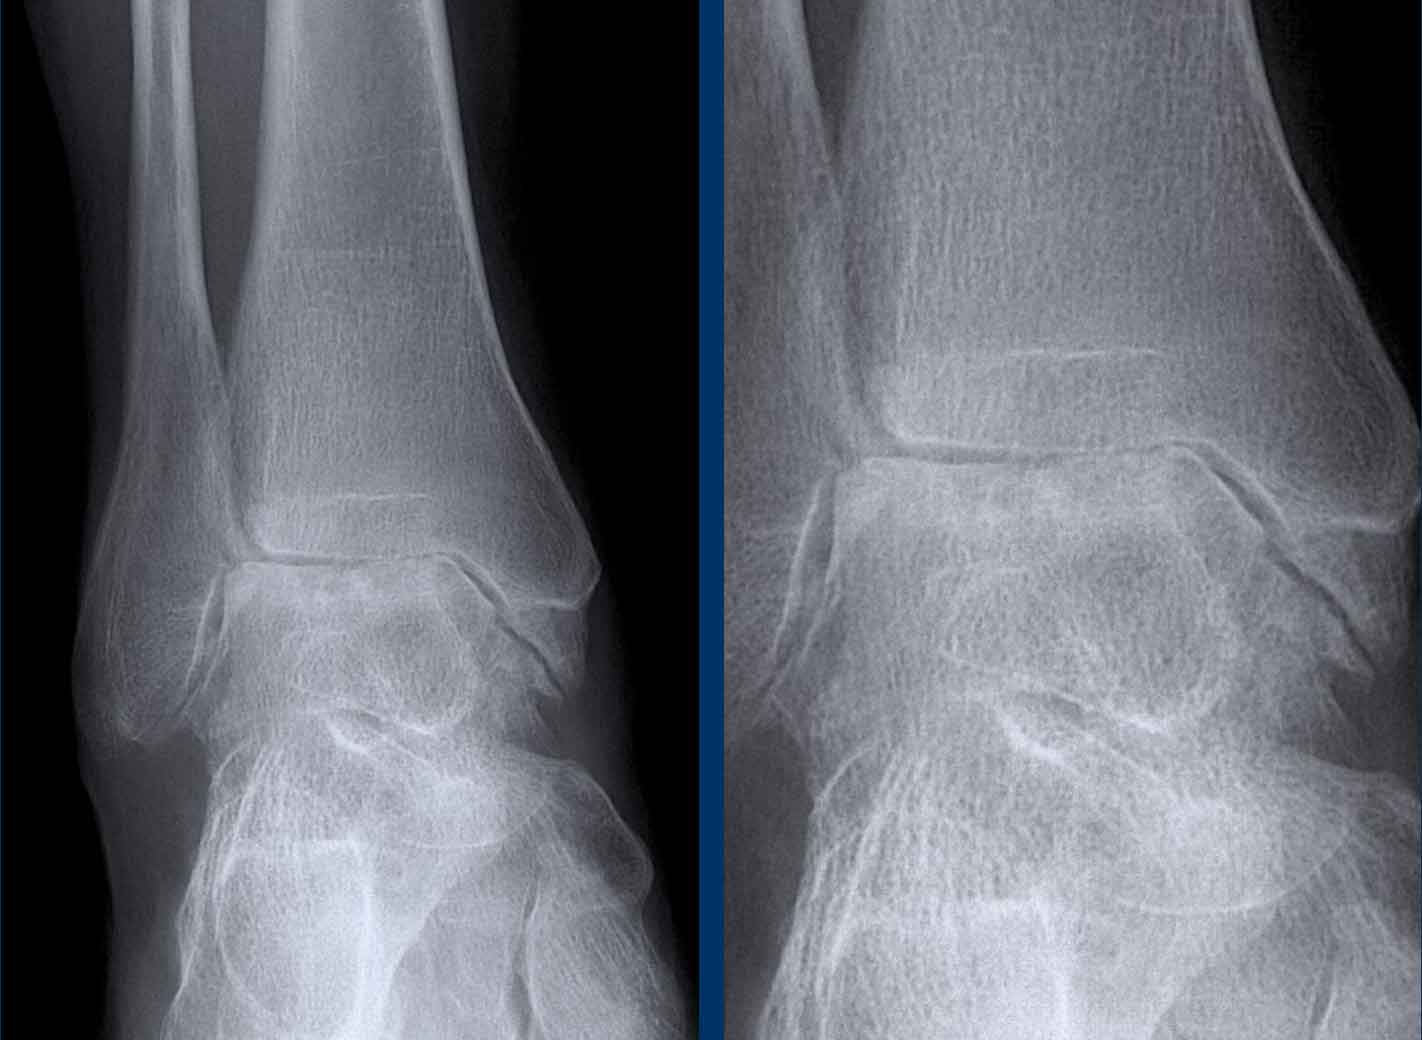 Hemophilic arthropathy of the ankle